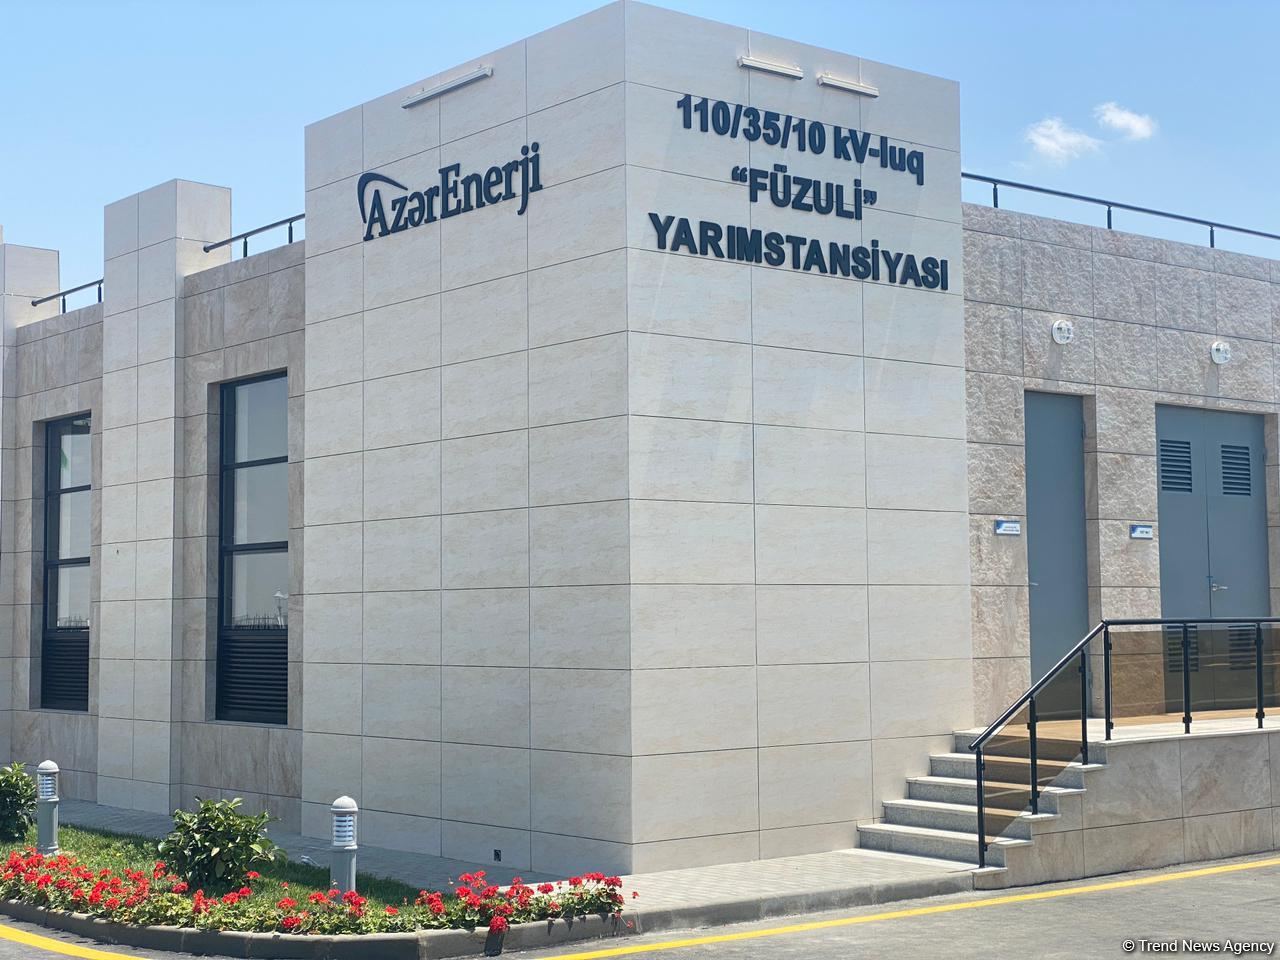 Во всех освобожденных районах Азербайджана строятся новые подстанции - ОАО "Азерэнержи" (ФОТО)